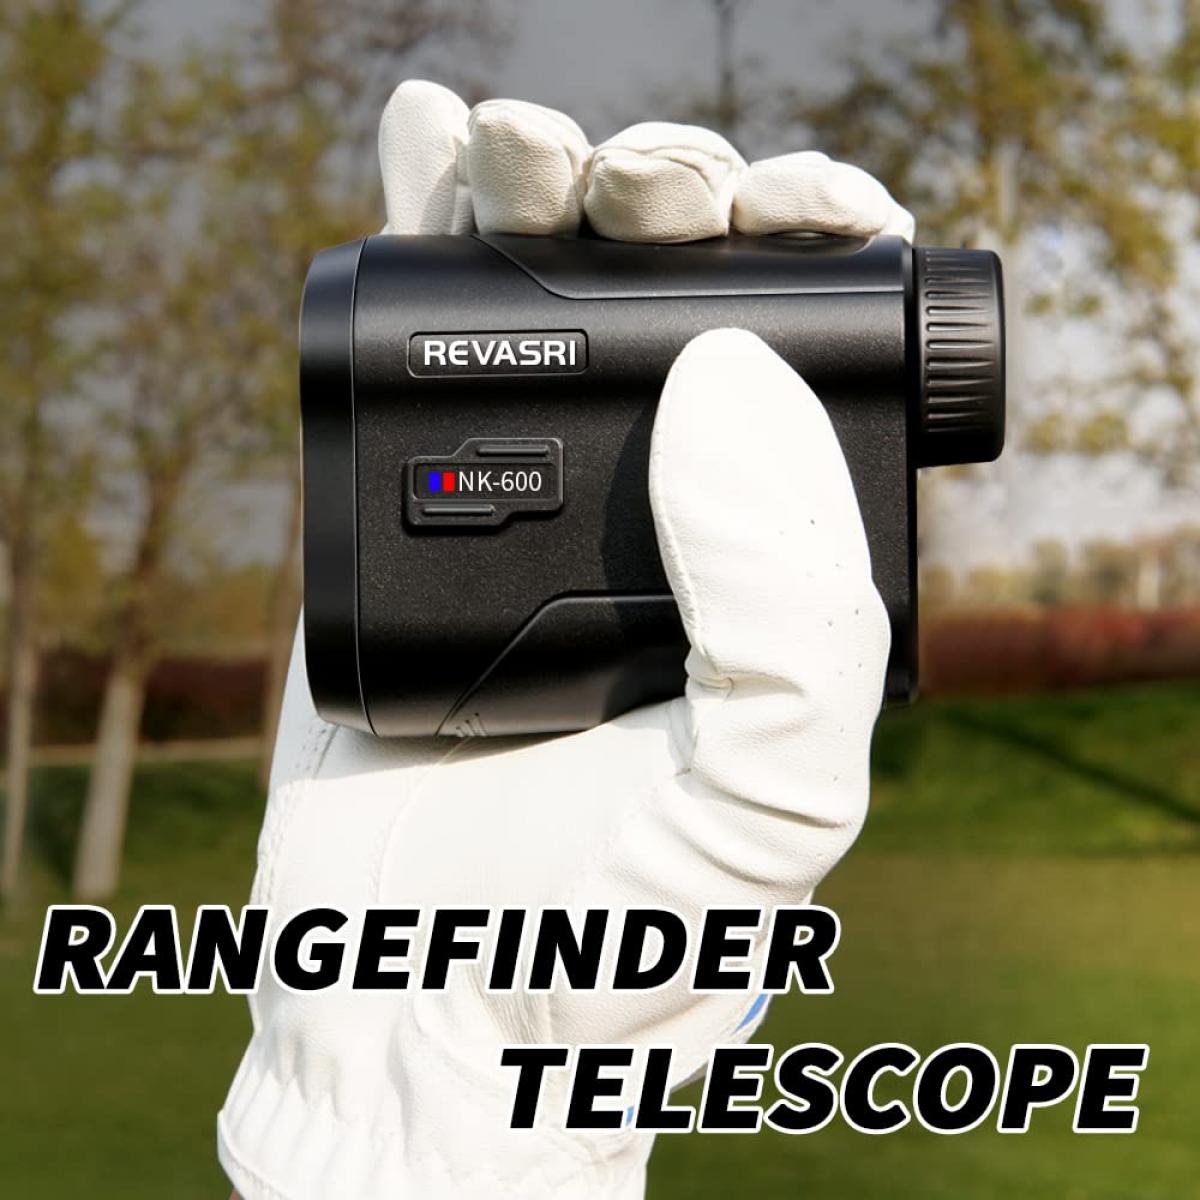 距離計望遠鏡ゴルフ距離計、スロープとフラッグロック振動、600ヤード垂直水平距離測定およびスキャン機能、ゴルフハンティング用多機能距離計、充電式バッテリー600ヤード